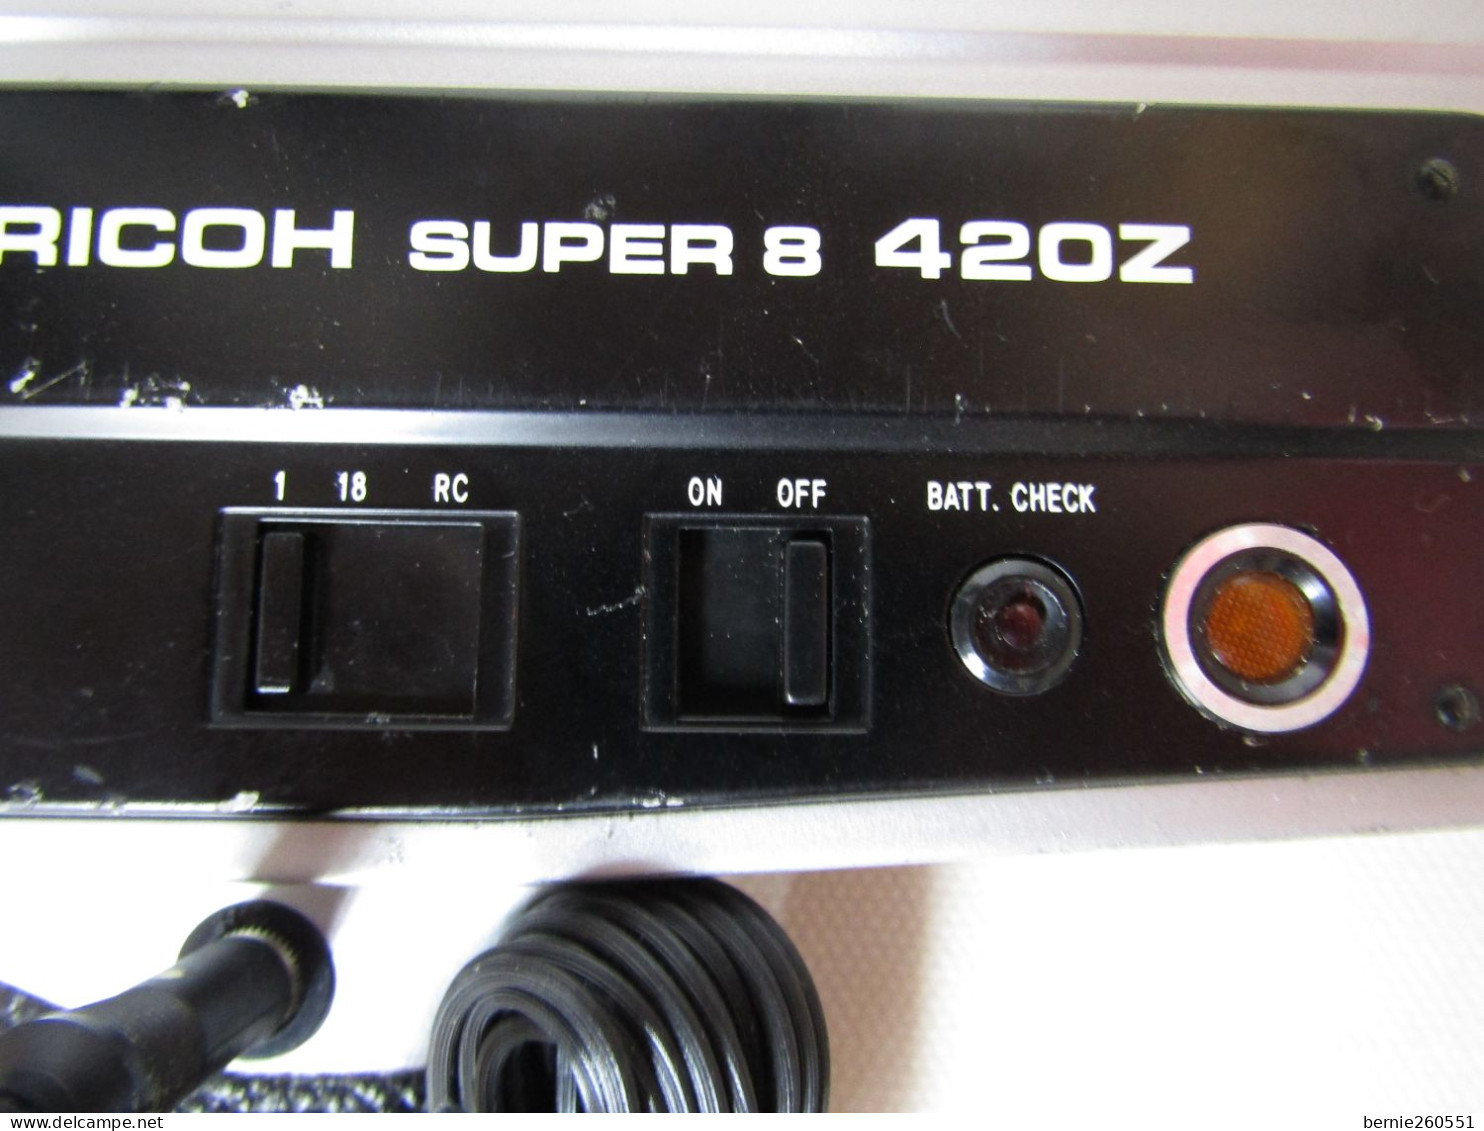 Pour amateur et collectionneur caméra RICOH 420Z super 8